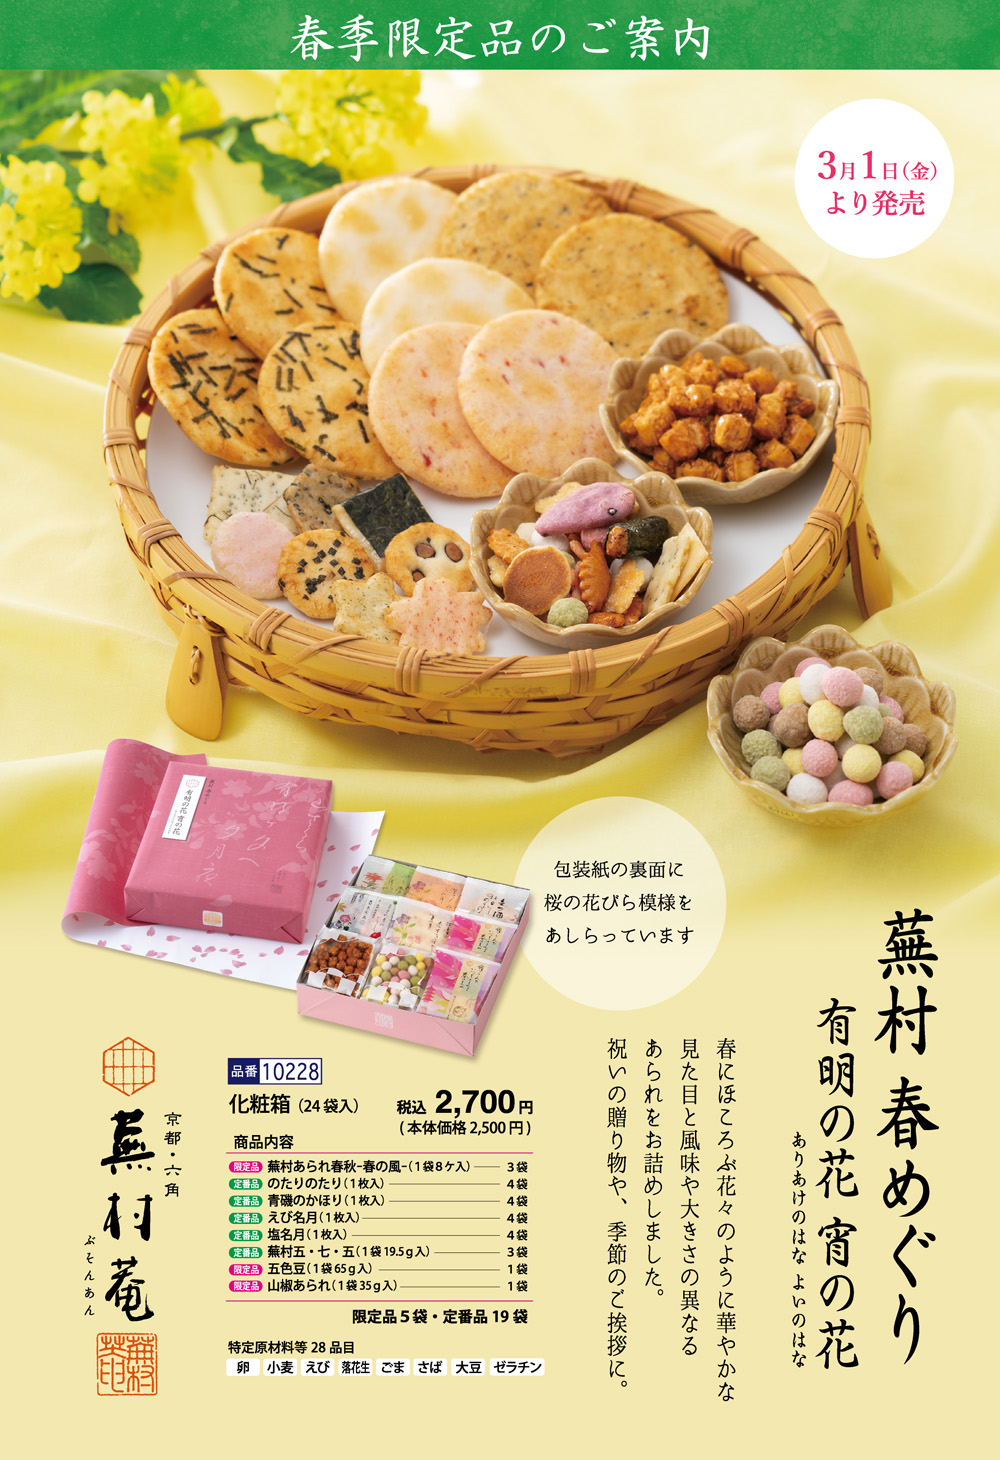 【春季限定】春の限定菓子6種詰め合わせ「春めぐり」 化粧箱